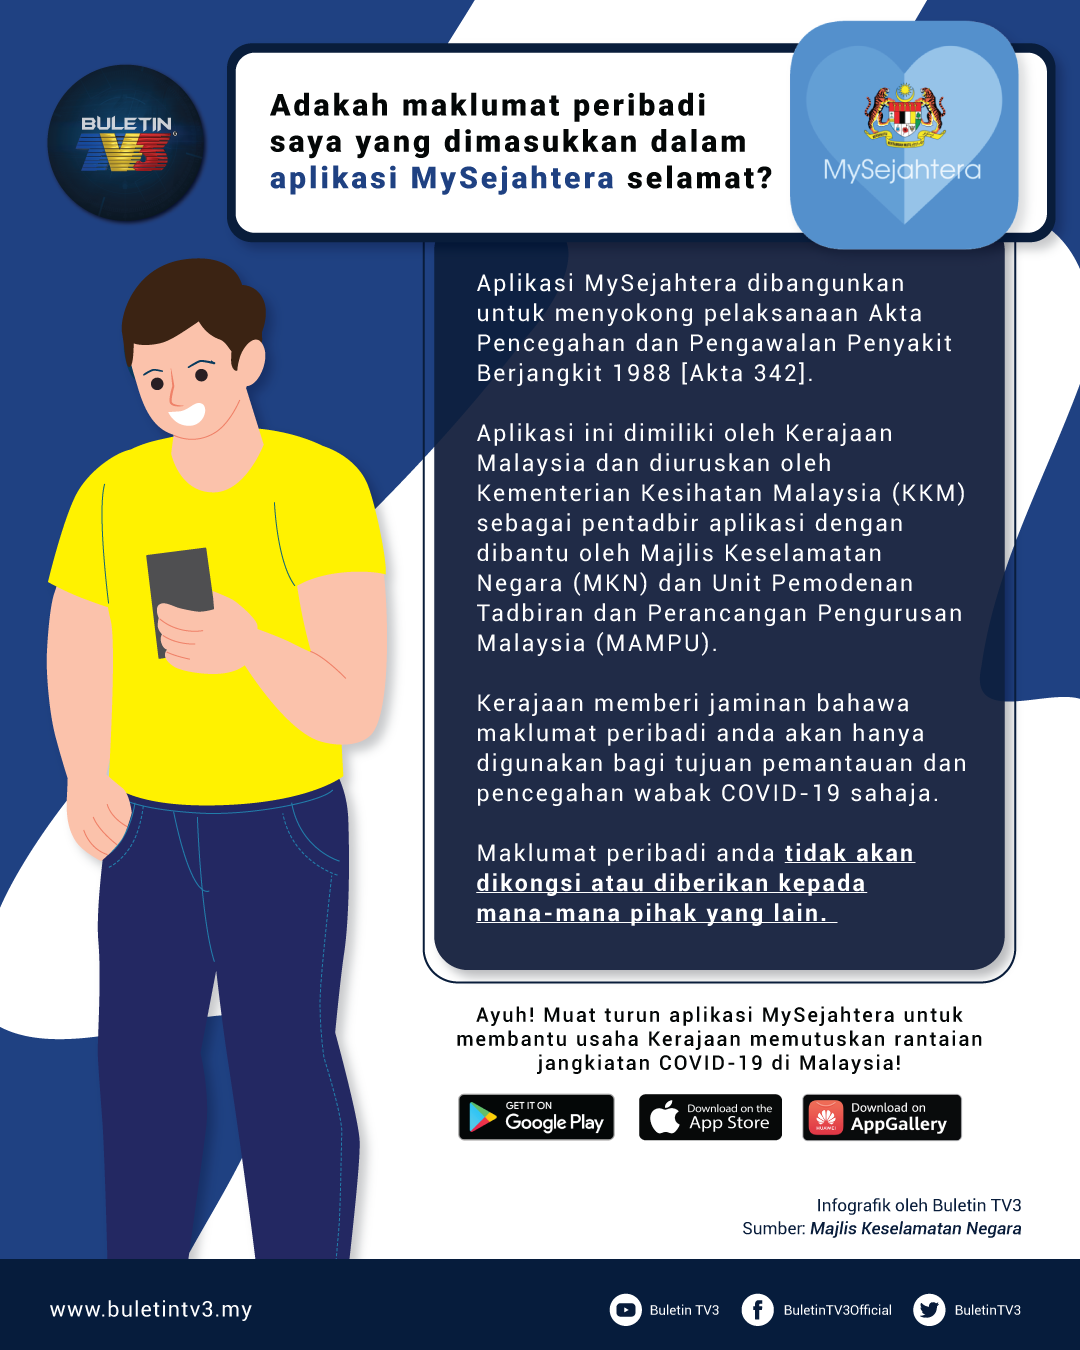 Adakah maklumat peribadi anda selamat dalam Aplikasi MySejahtera ?